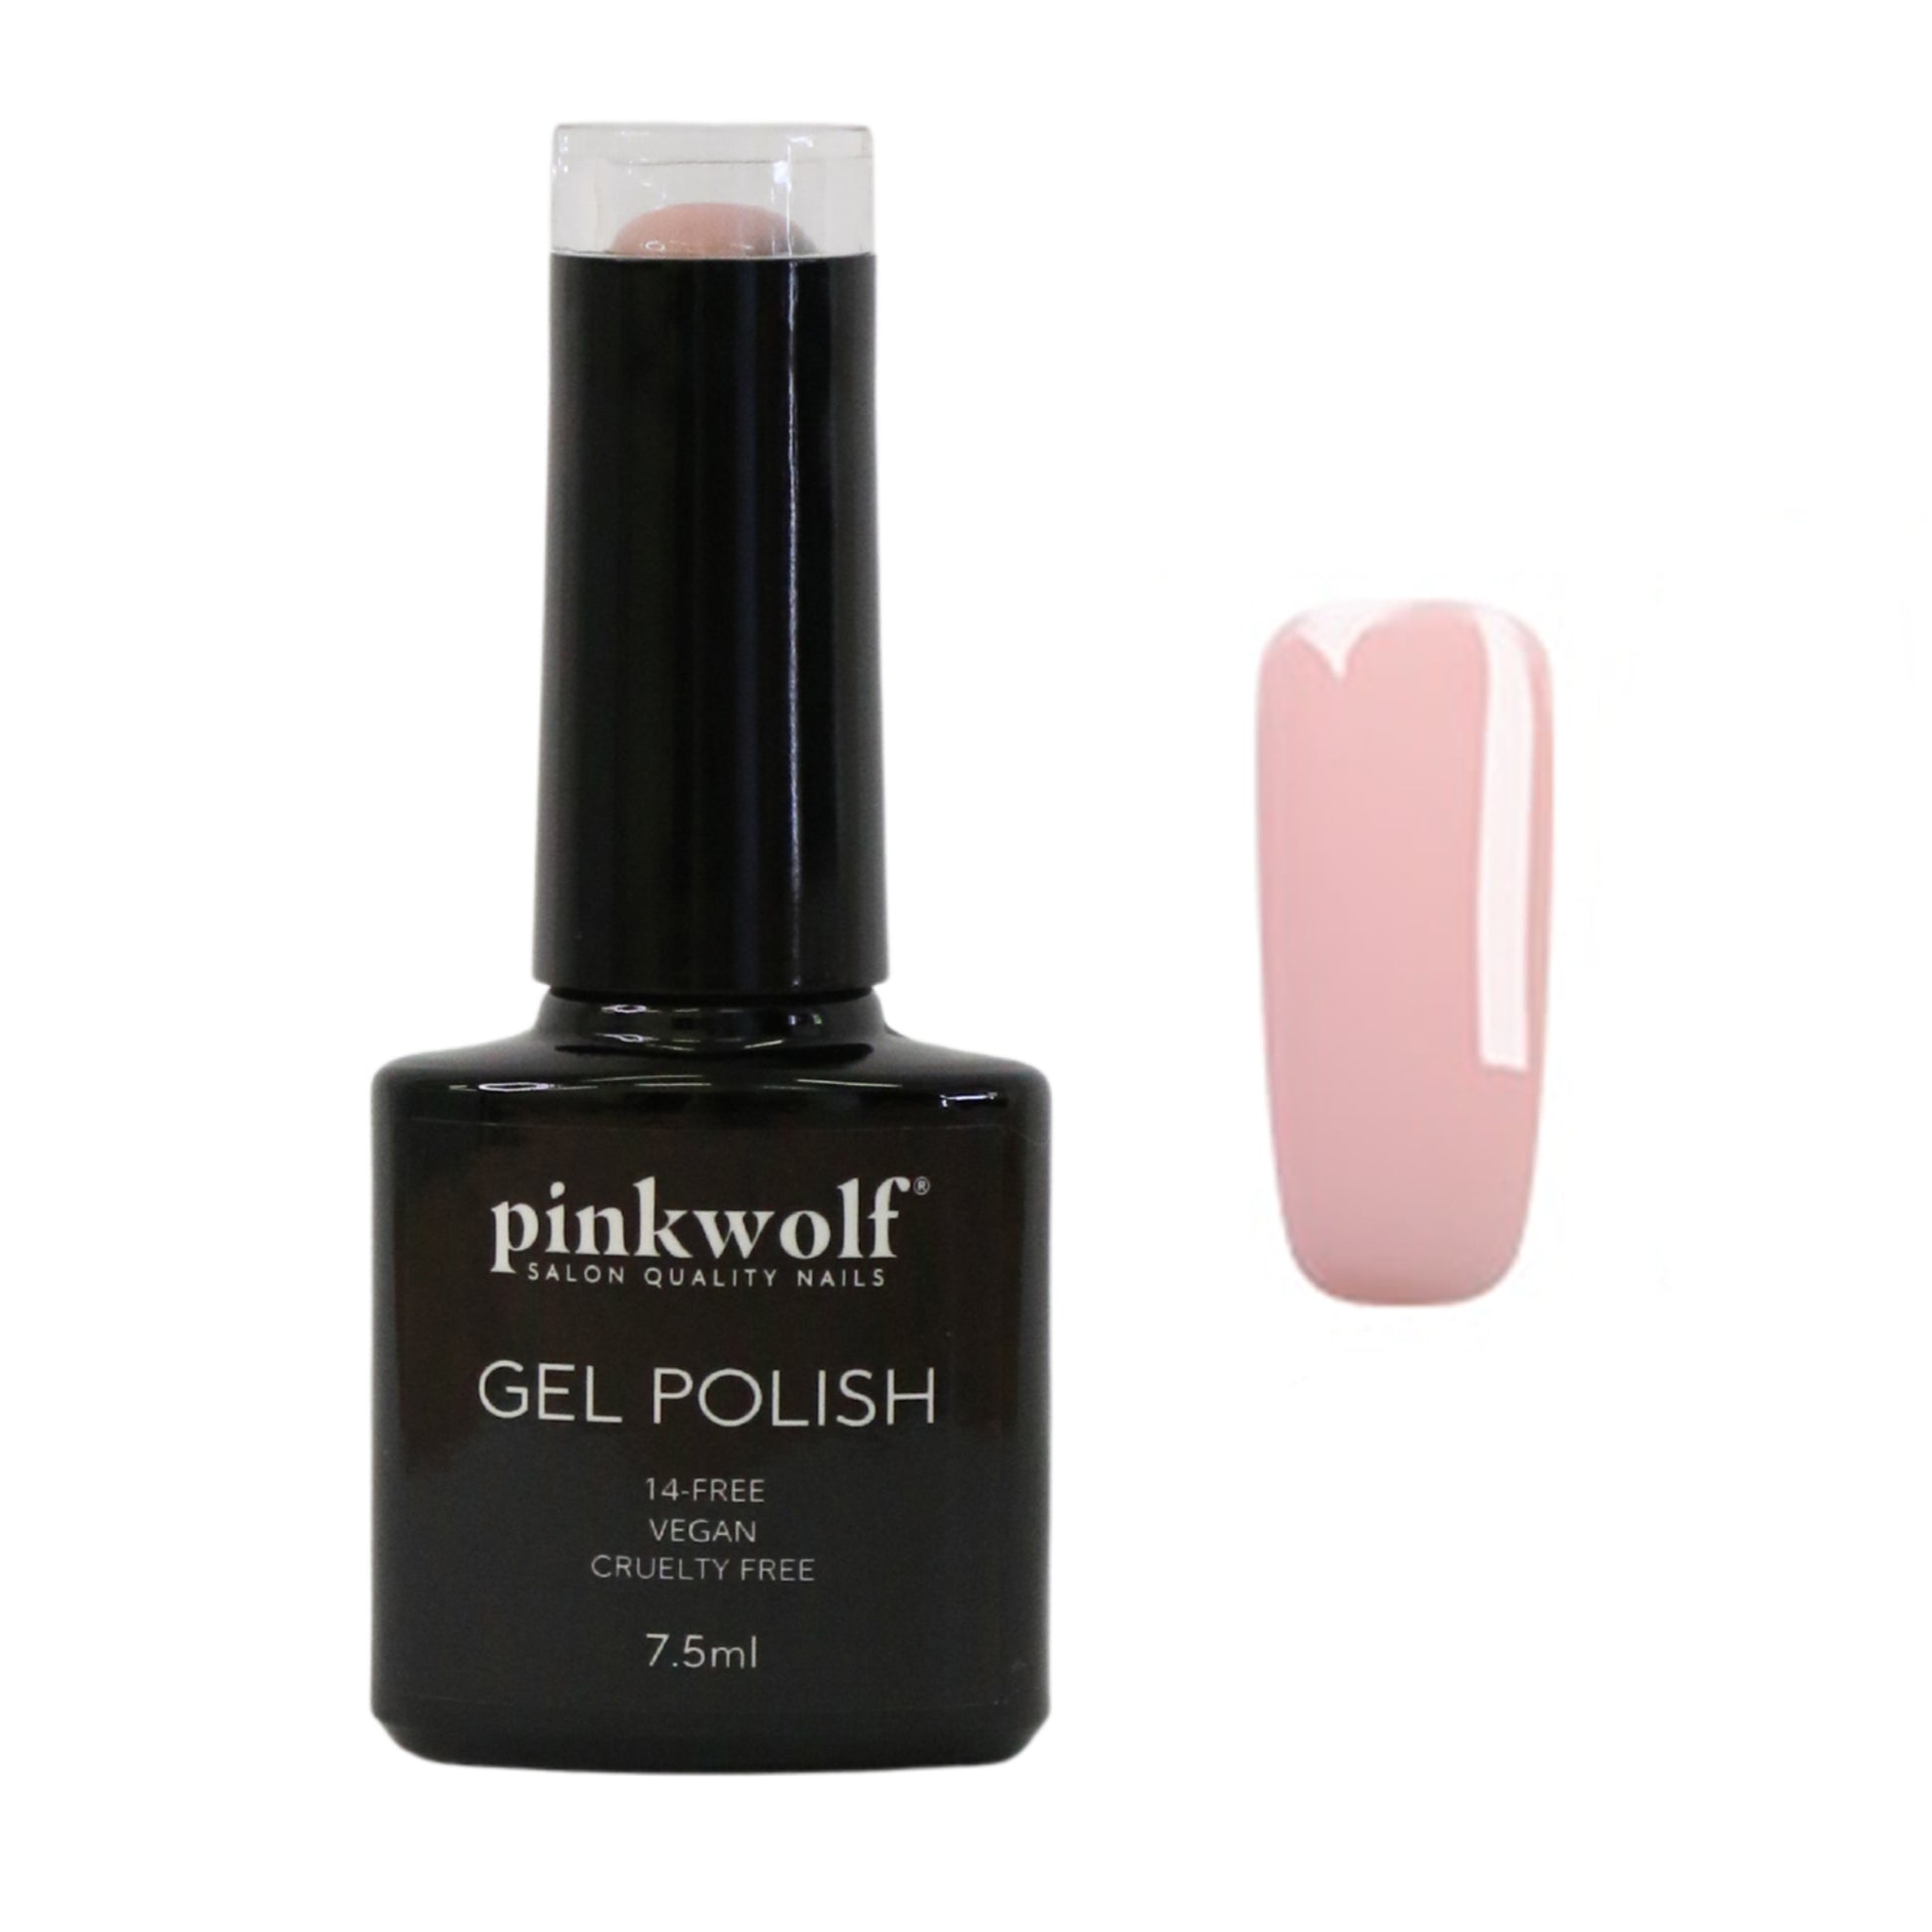 Pinkwolf sheer pink gel nail polish 7.5ml bottle 